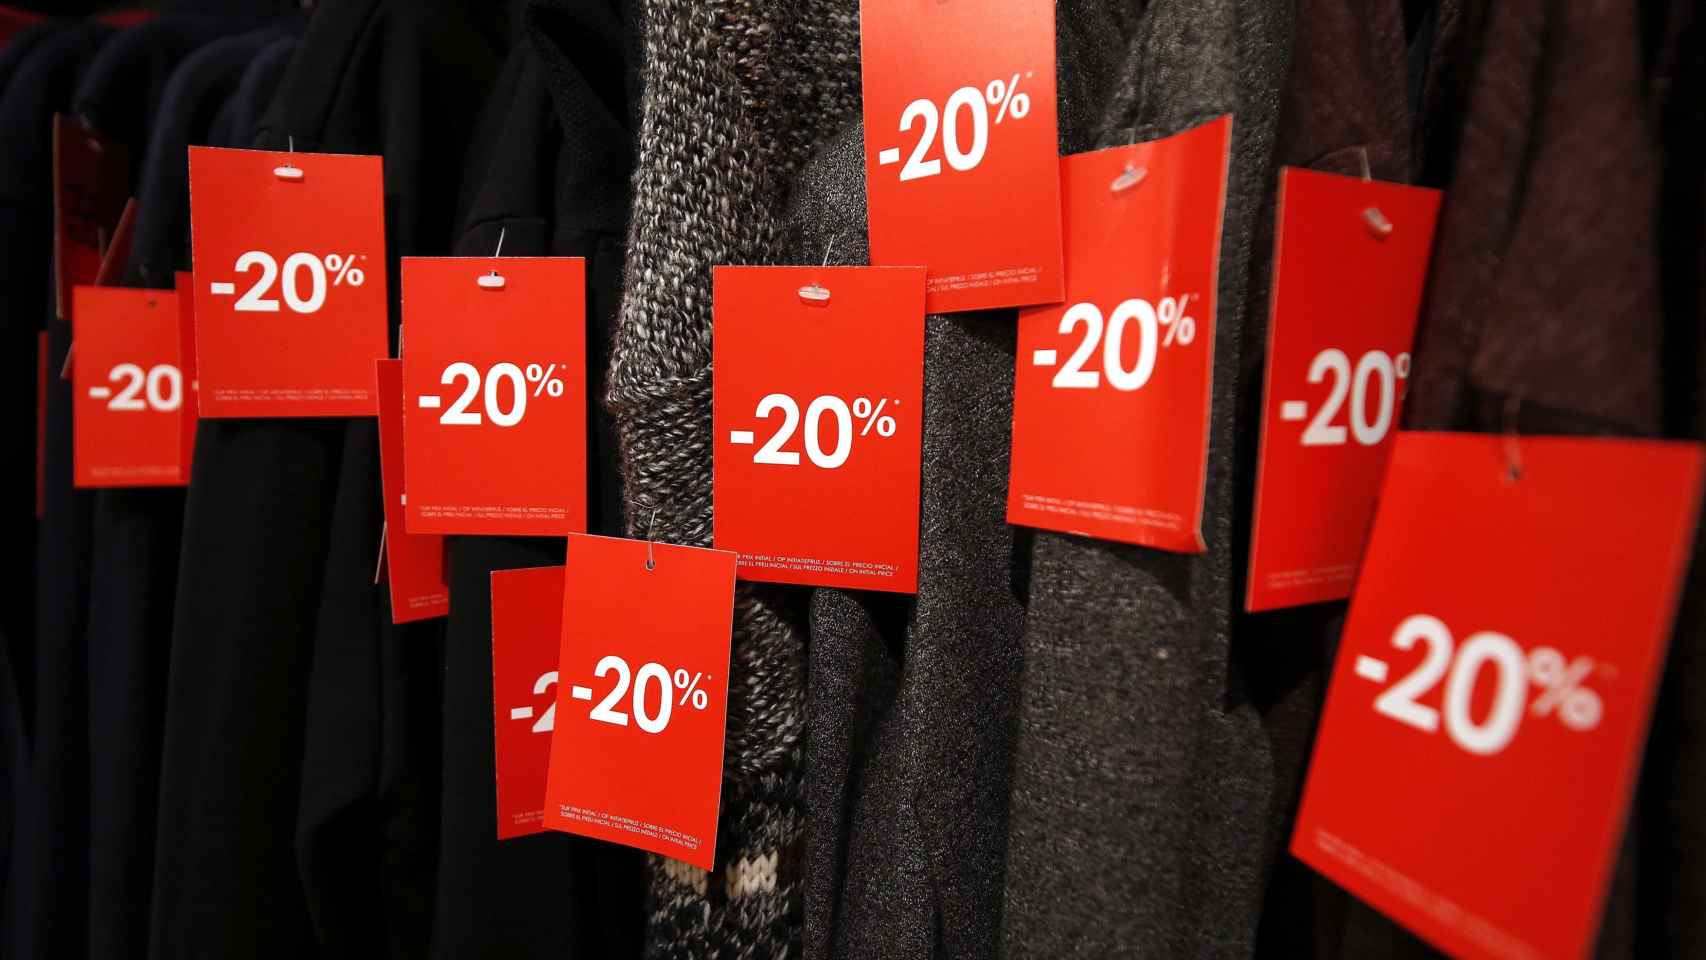 Piezas de ropa en una tienda con el 20% de descuento, en una imagen de archivo / EFE